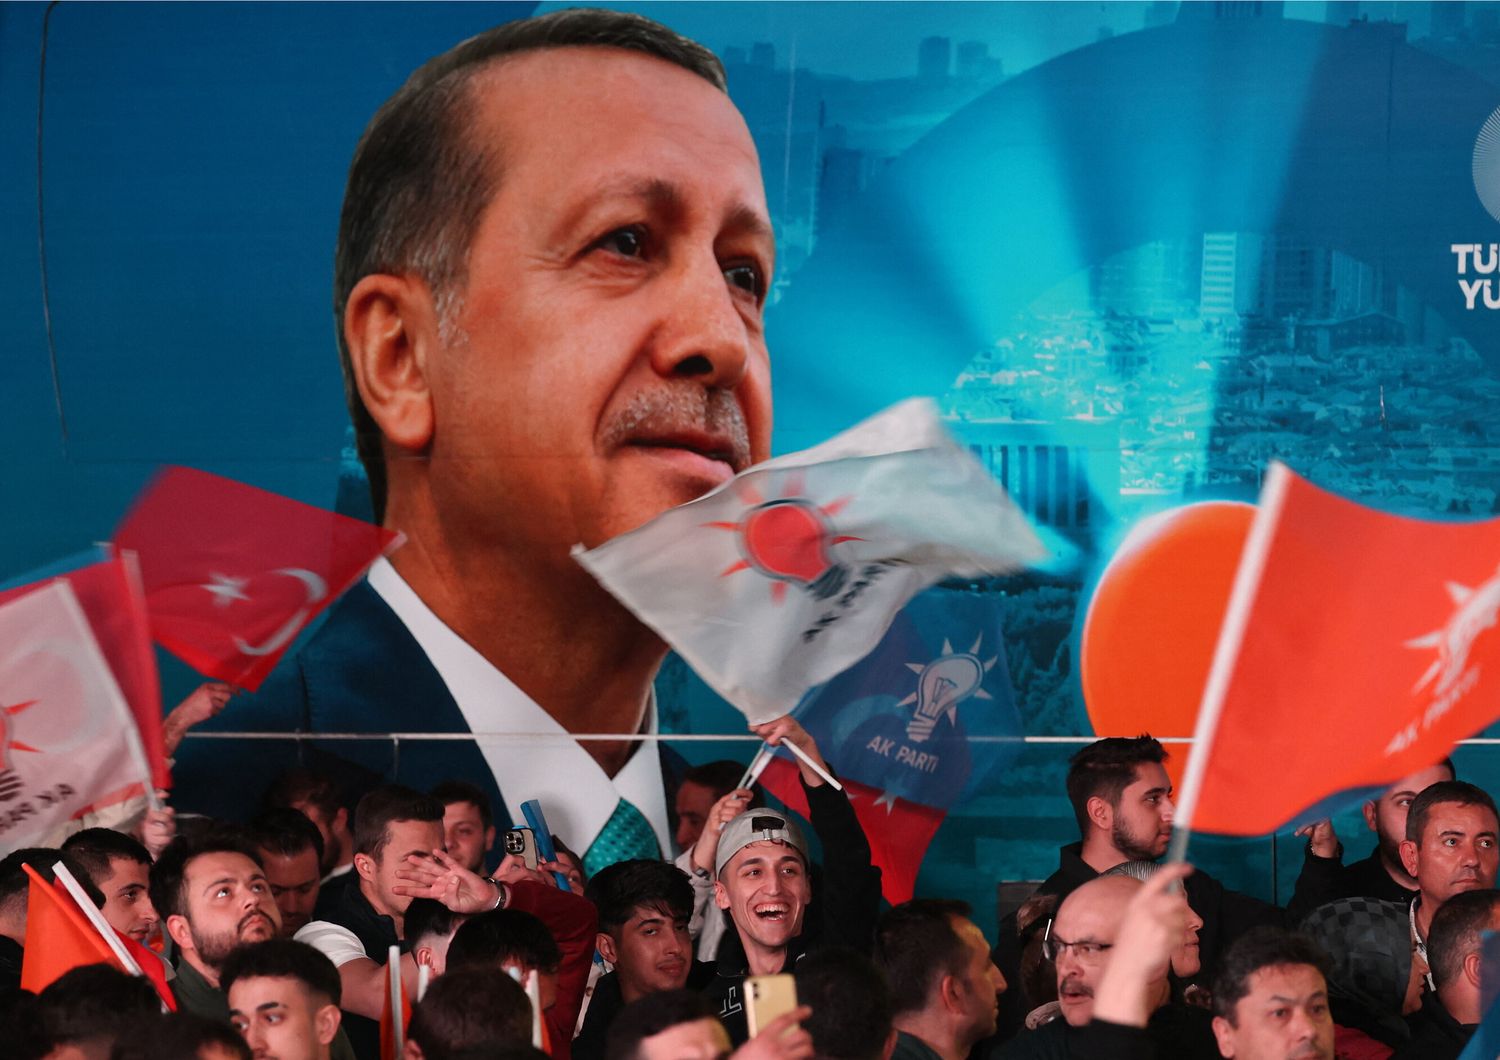 erdogan sconfitta elezioni istanbul ankara